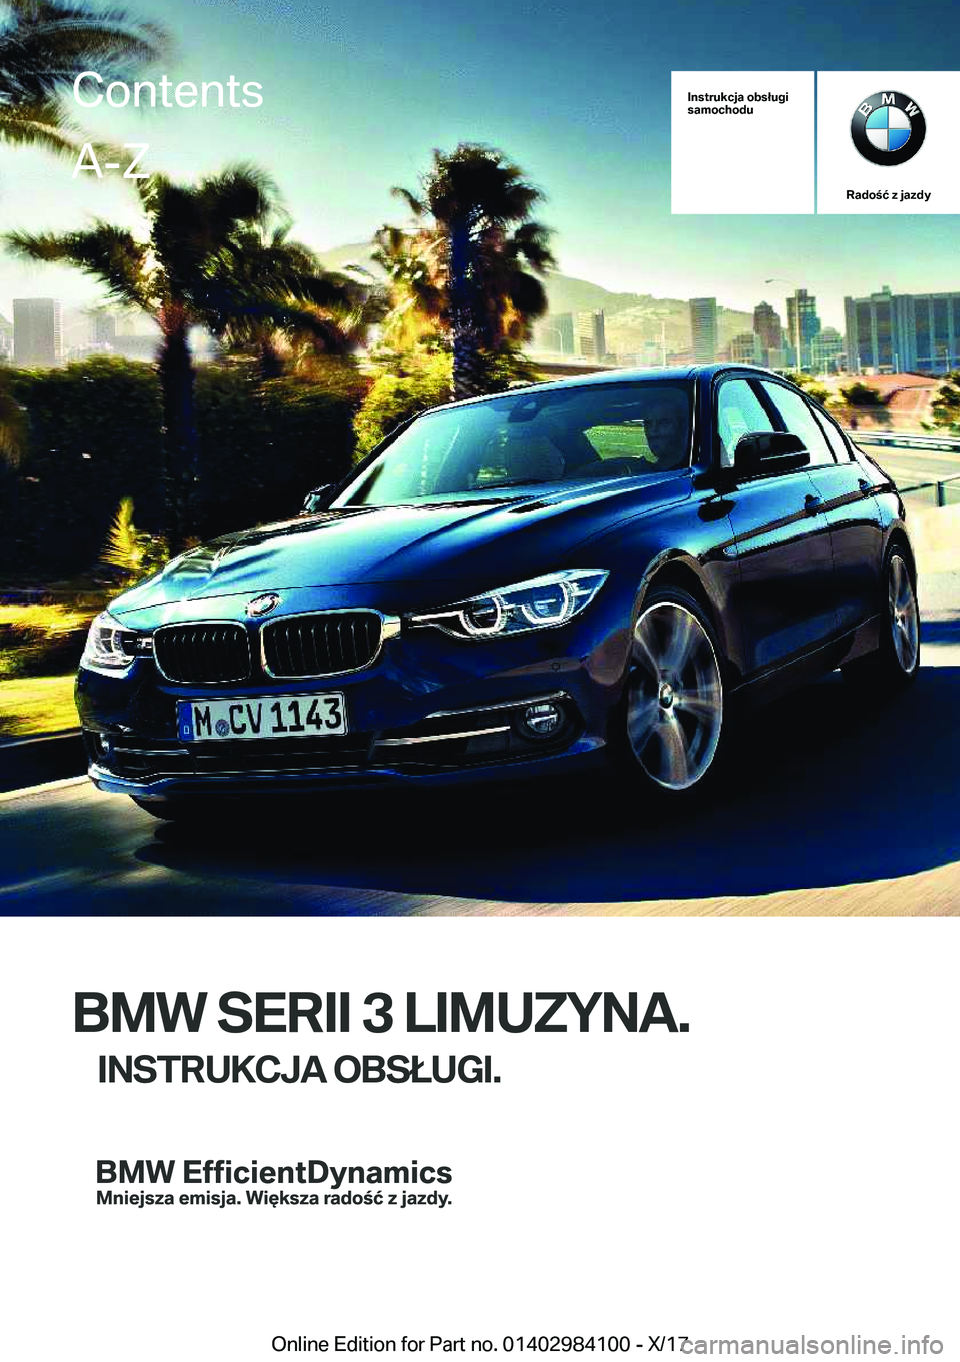 BMW 3 SERIES 2018  Instrukcja obsługi (in Polish) �I�n�s�t�r�u�k�c�j�a��o�b�s�ł�u�g�i
�s�a�m�o�c�h�o�d�u
�R�a�d�o�